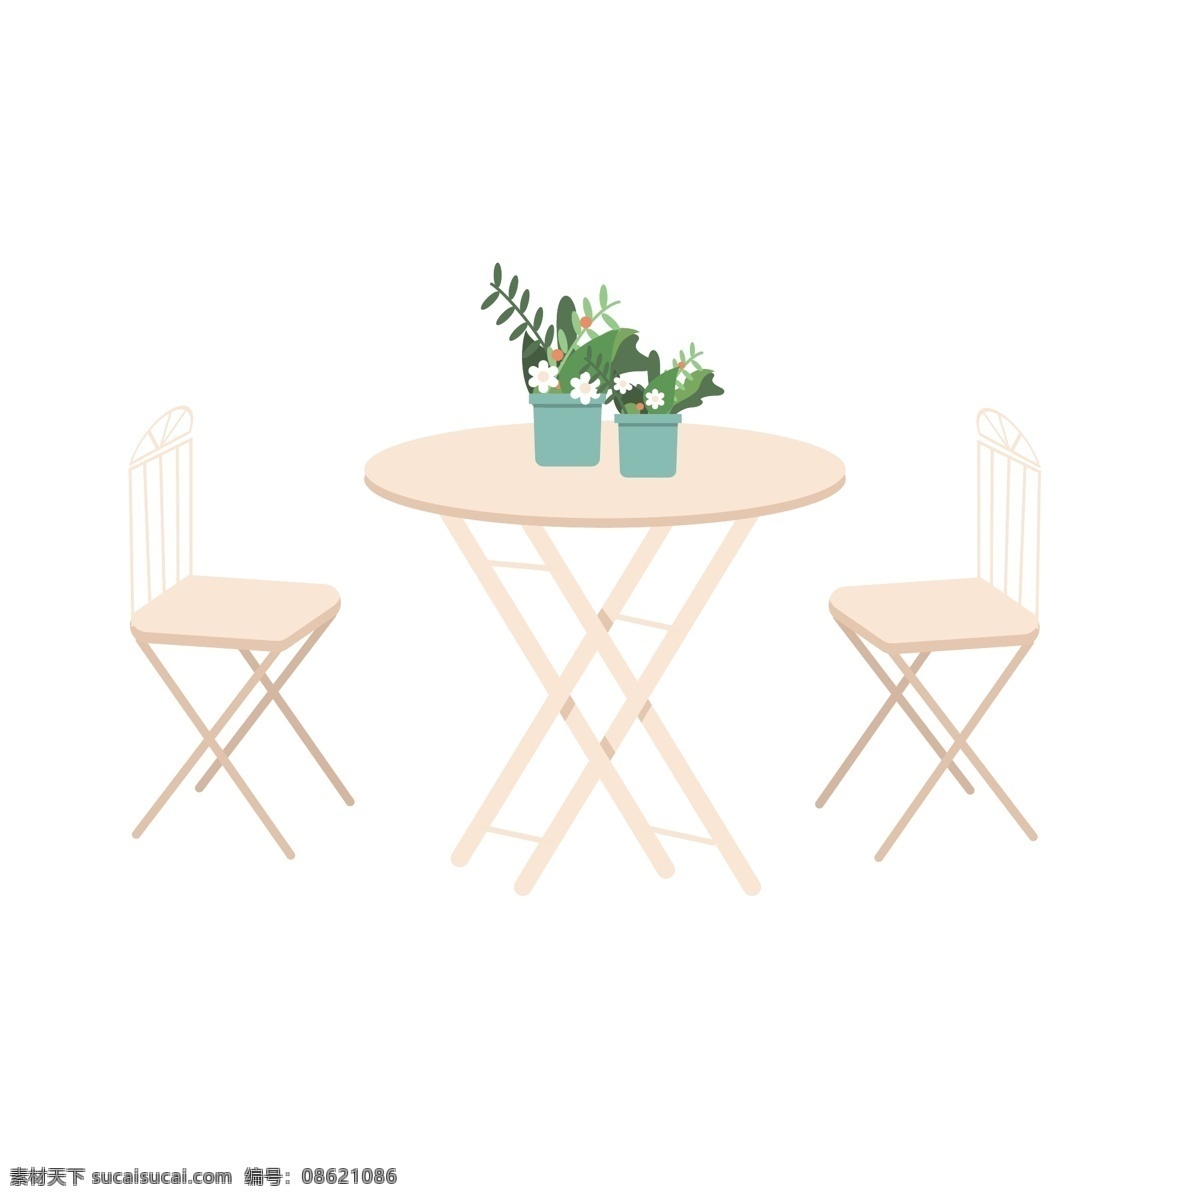 手绘 卡通 漂亮 桌椅 卡通椅子 卡通桌子 植物 花瓶 餐饮 店铺 下午茶 喝下午茶 休闲时光